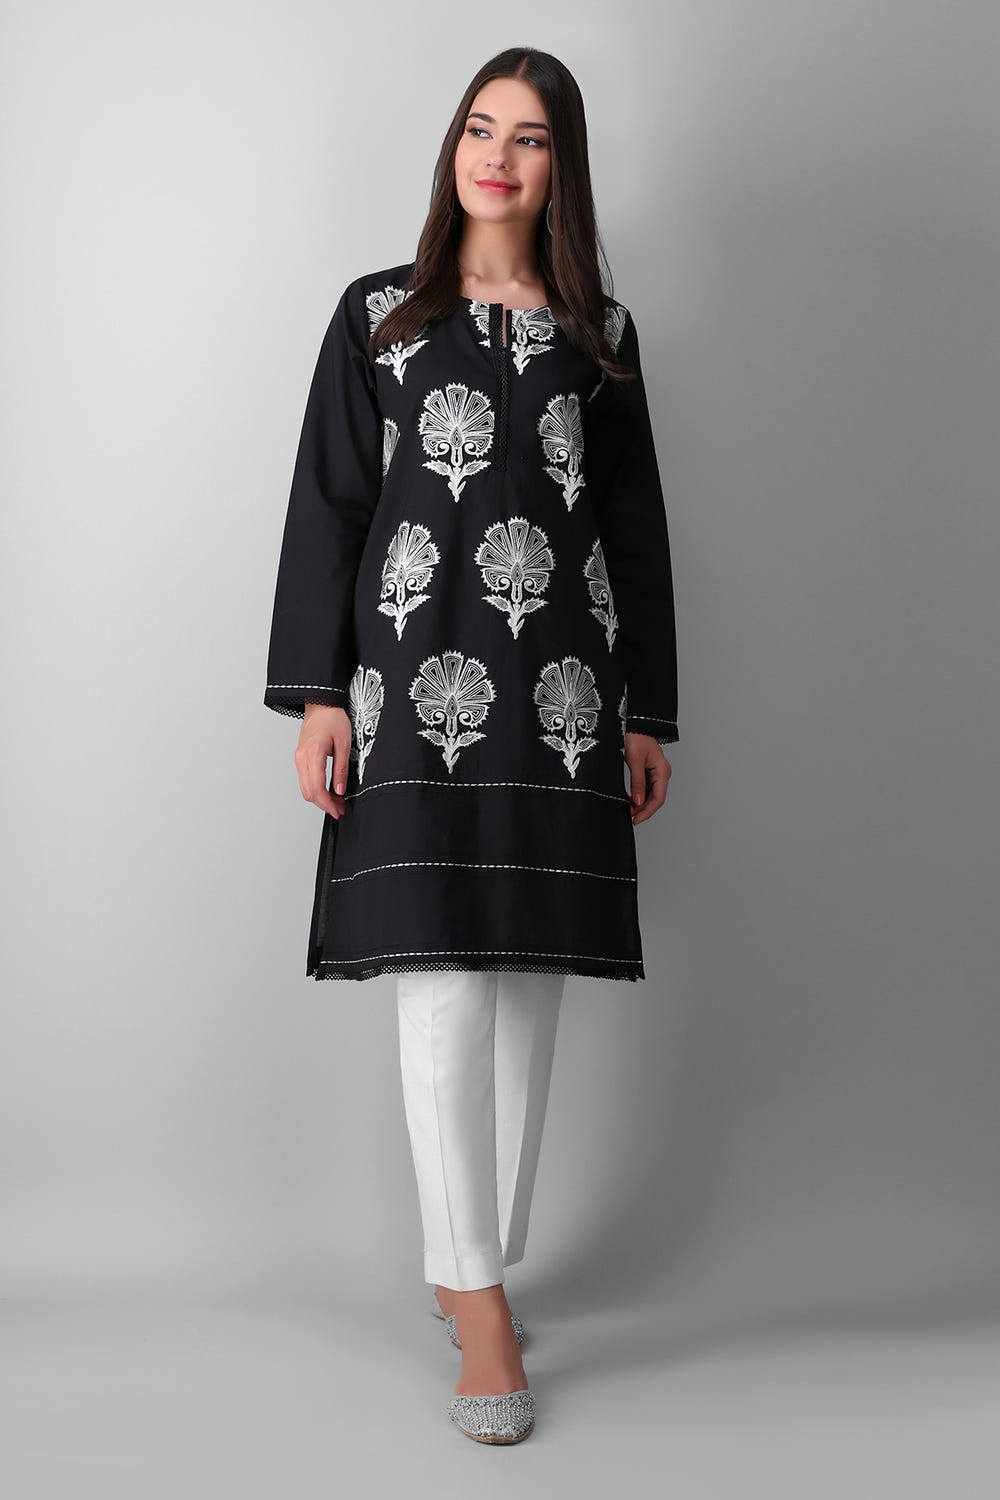 Online-shopping-in-pakistan-dresses-girls-dresses